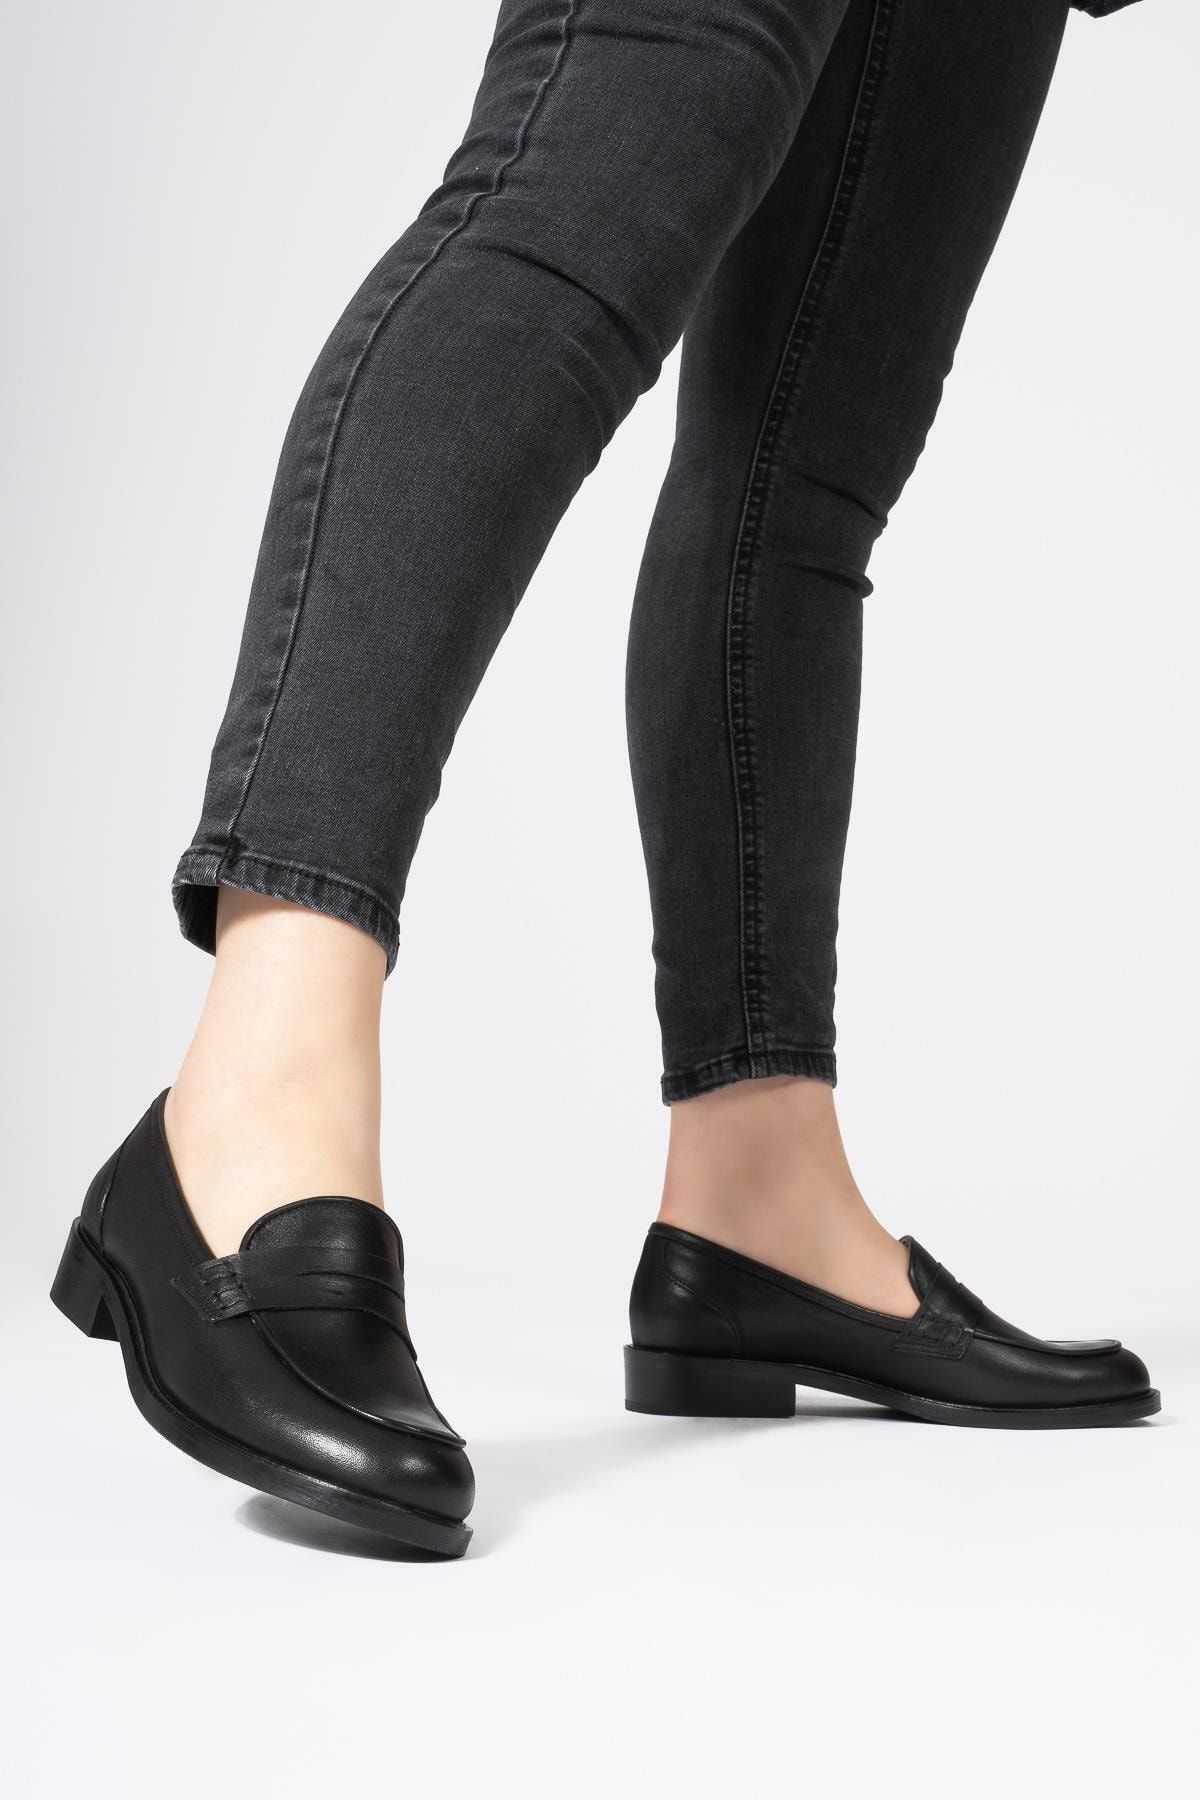 CZ London Hakiki Deri Kadın Günlük Bağcıksız Klasik Loafer Ayakkabı